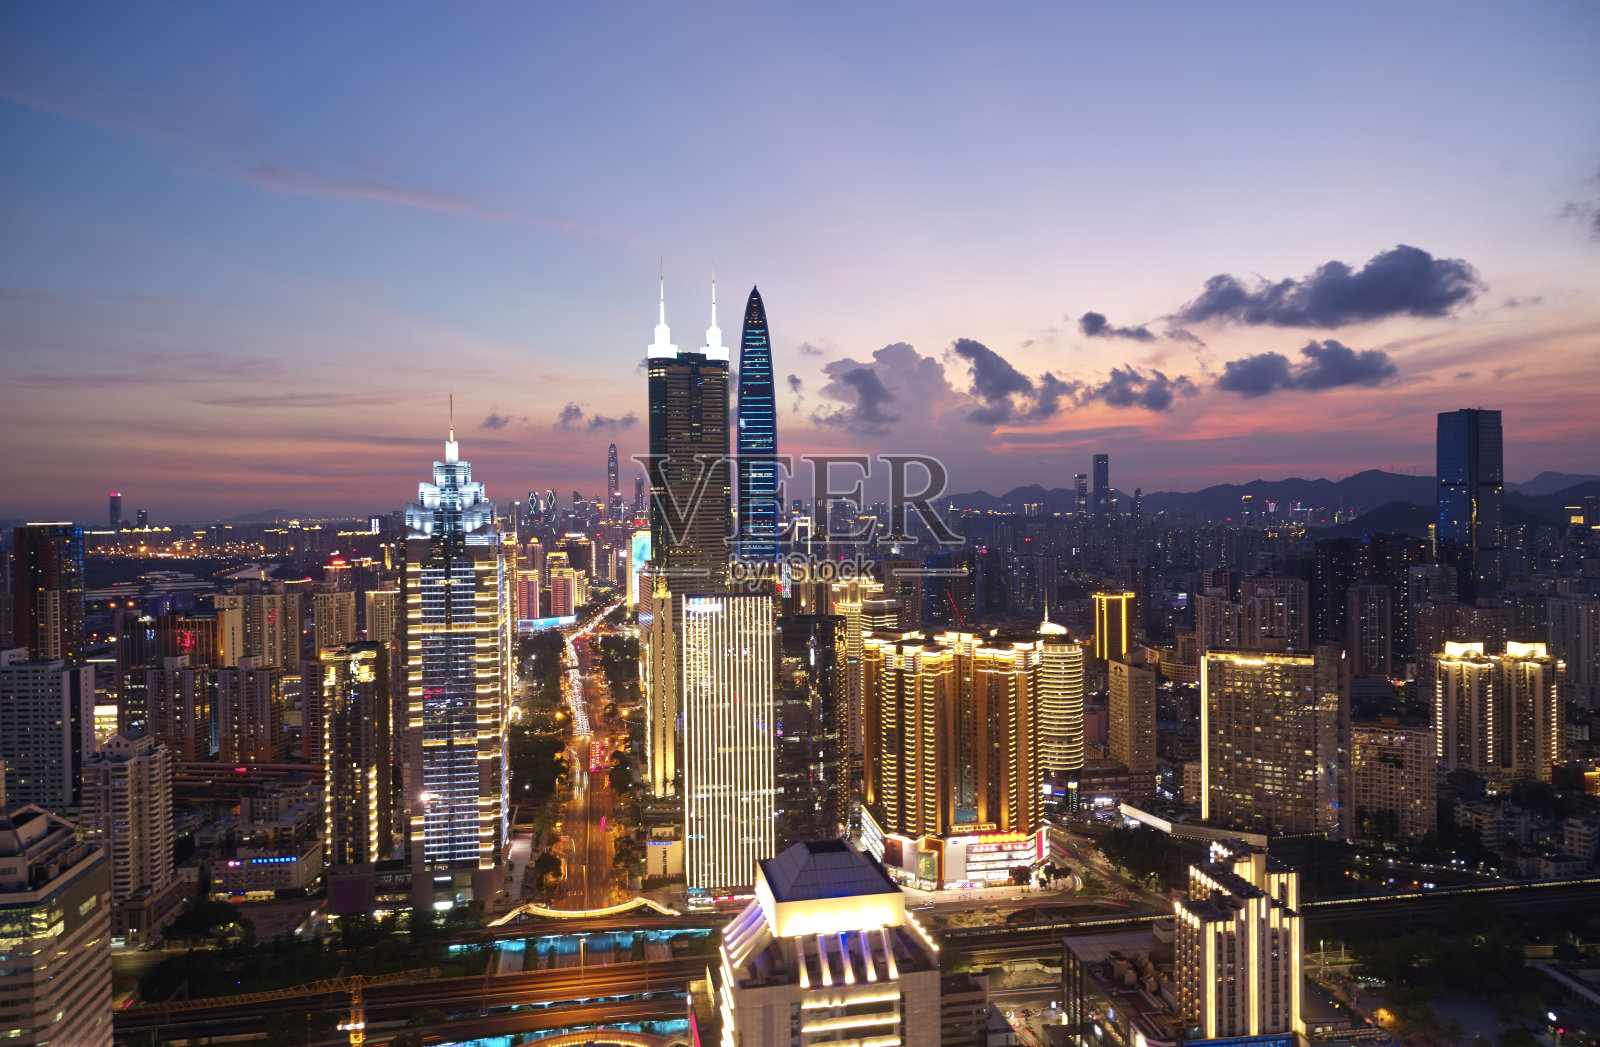 无人机在黄昏时分拍摄了中国深圳的城市景观照片摄影图片